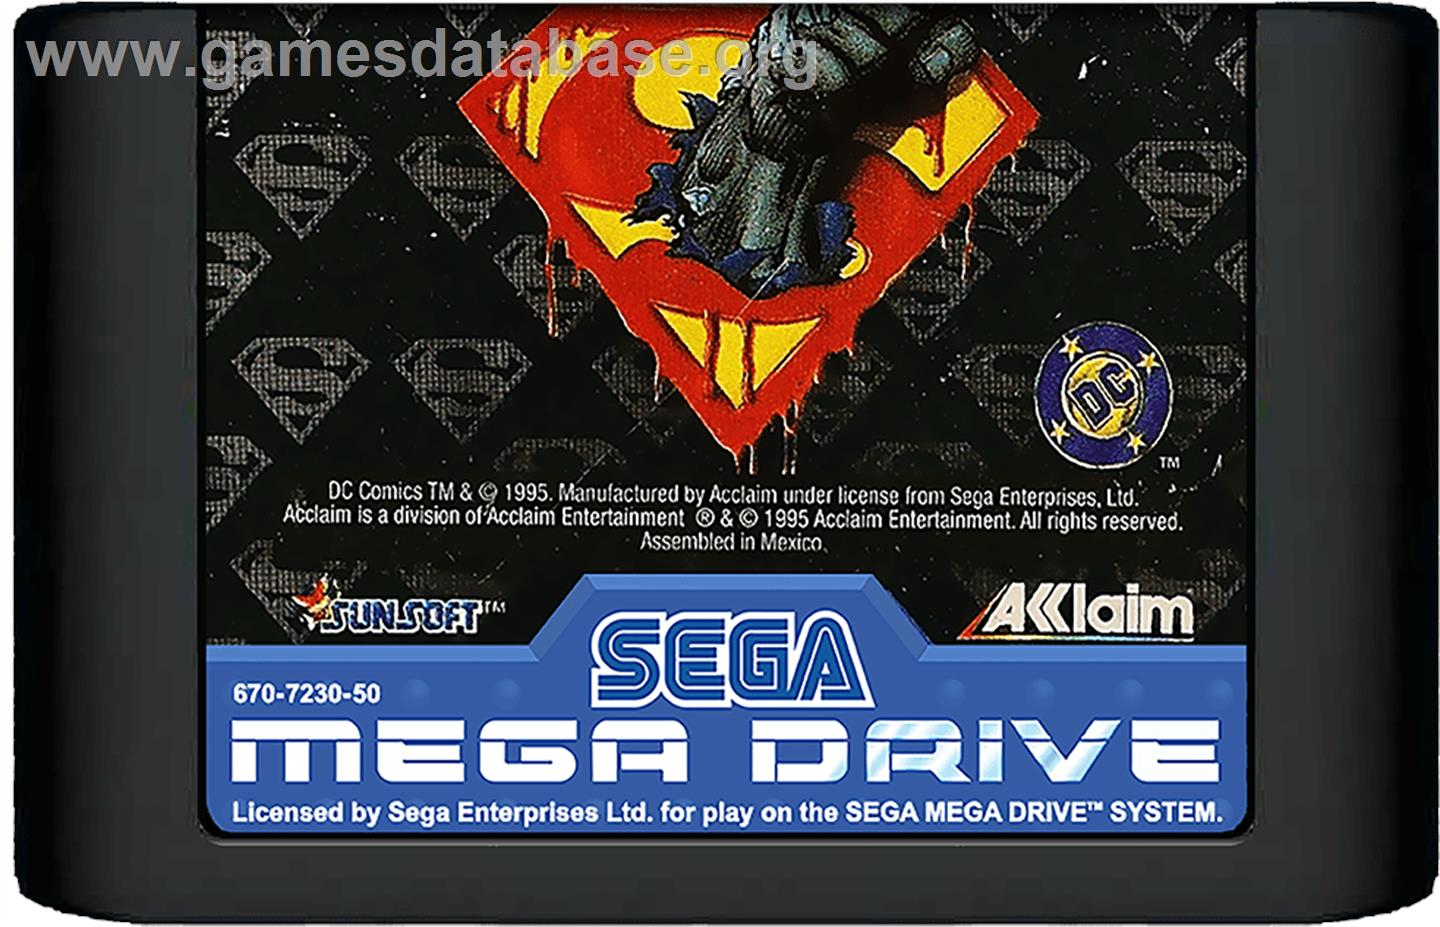 Death and Return of Superman, The - Sega Genesis - Artwork - Cartridge